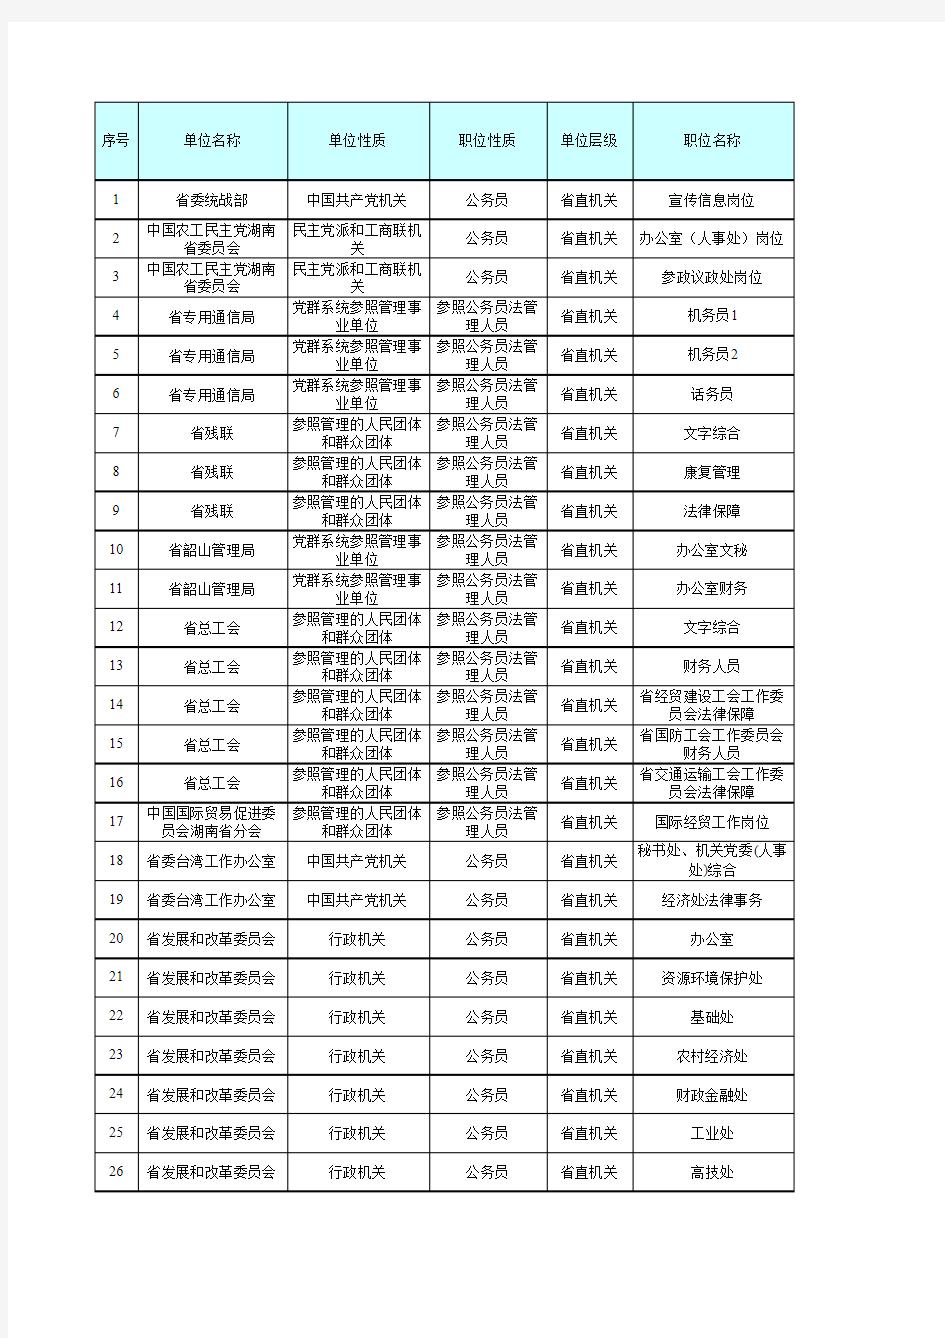 2015年湖南省公务员考试职位表